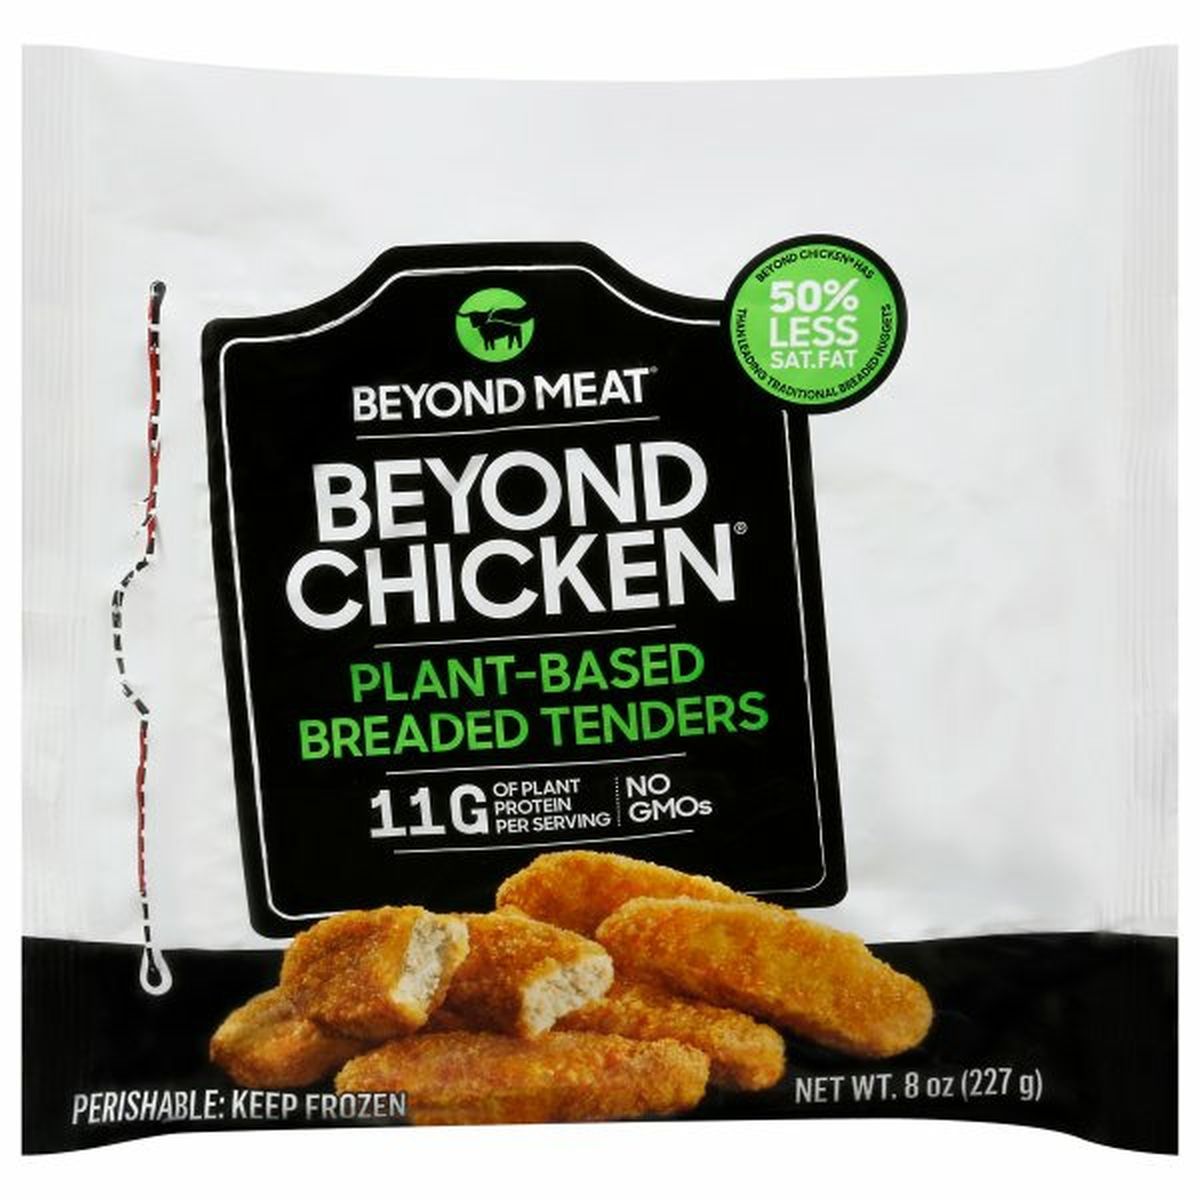 Calories in Beyond Meat Beyond Chicken Breaded Tenders, Plant-Based